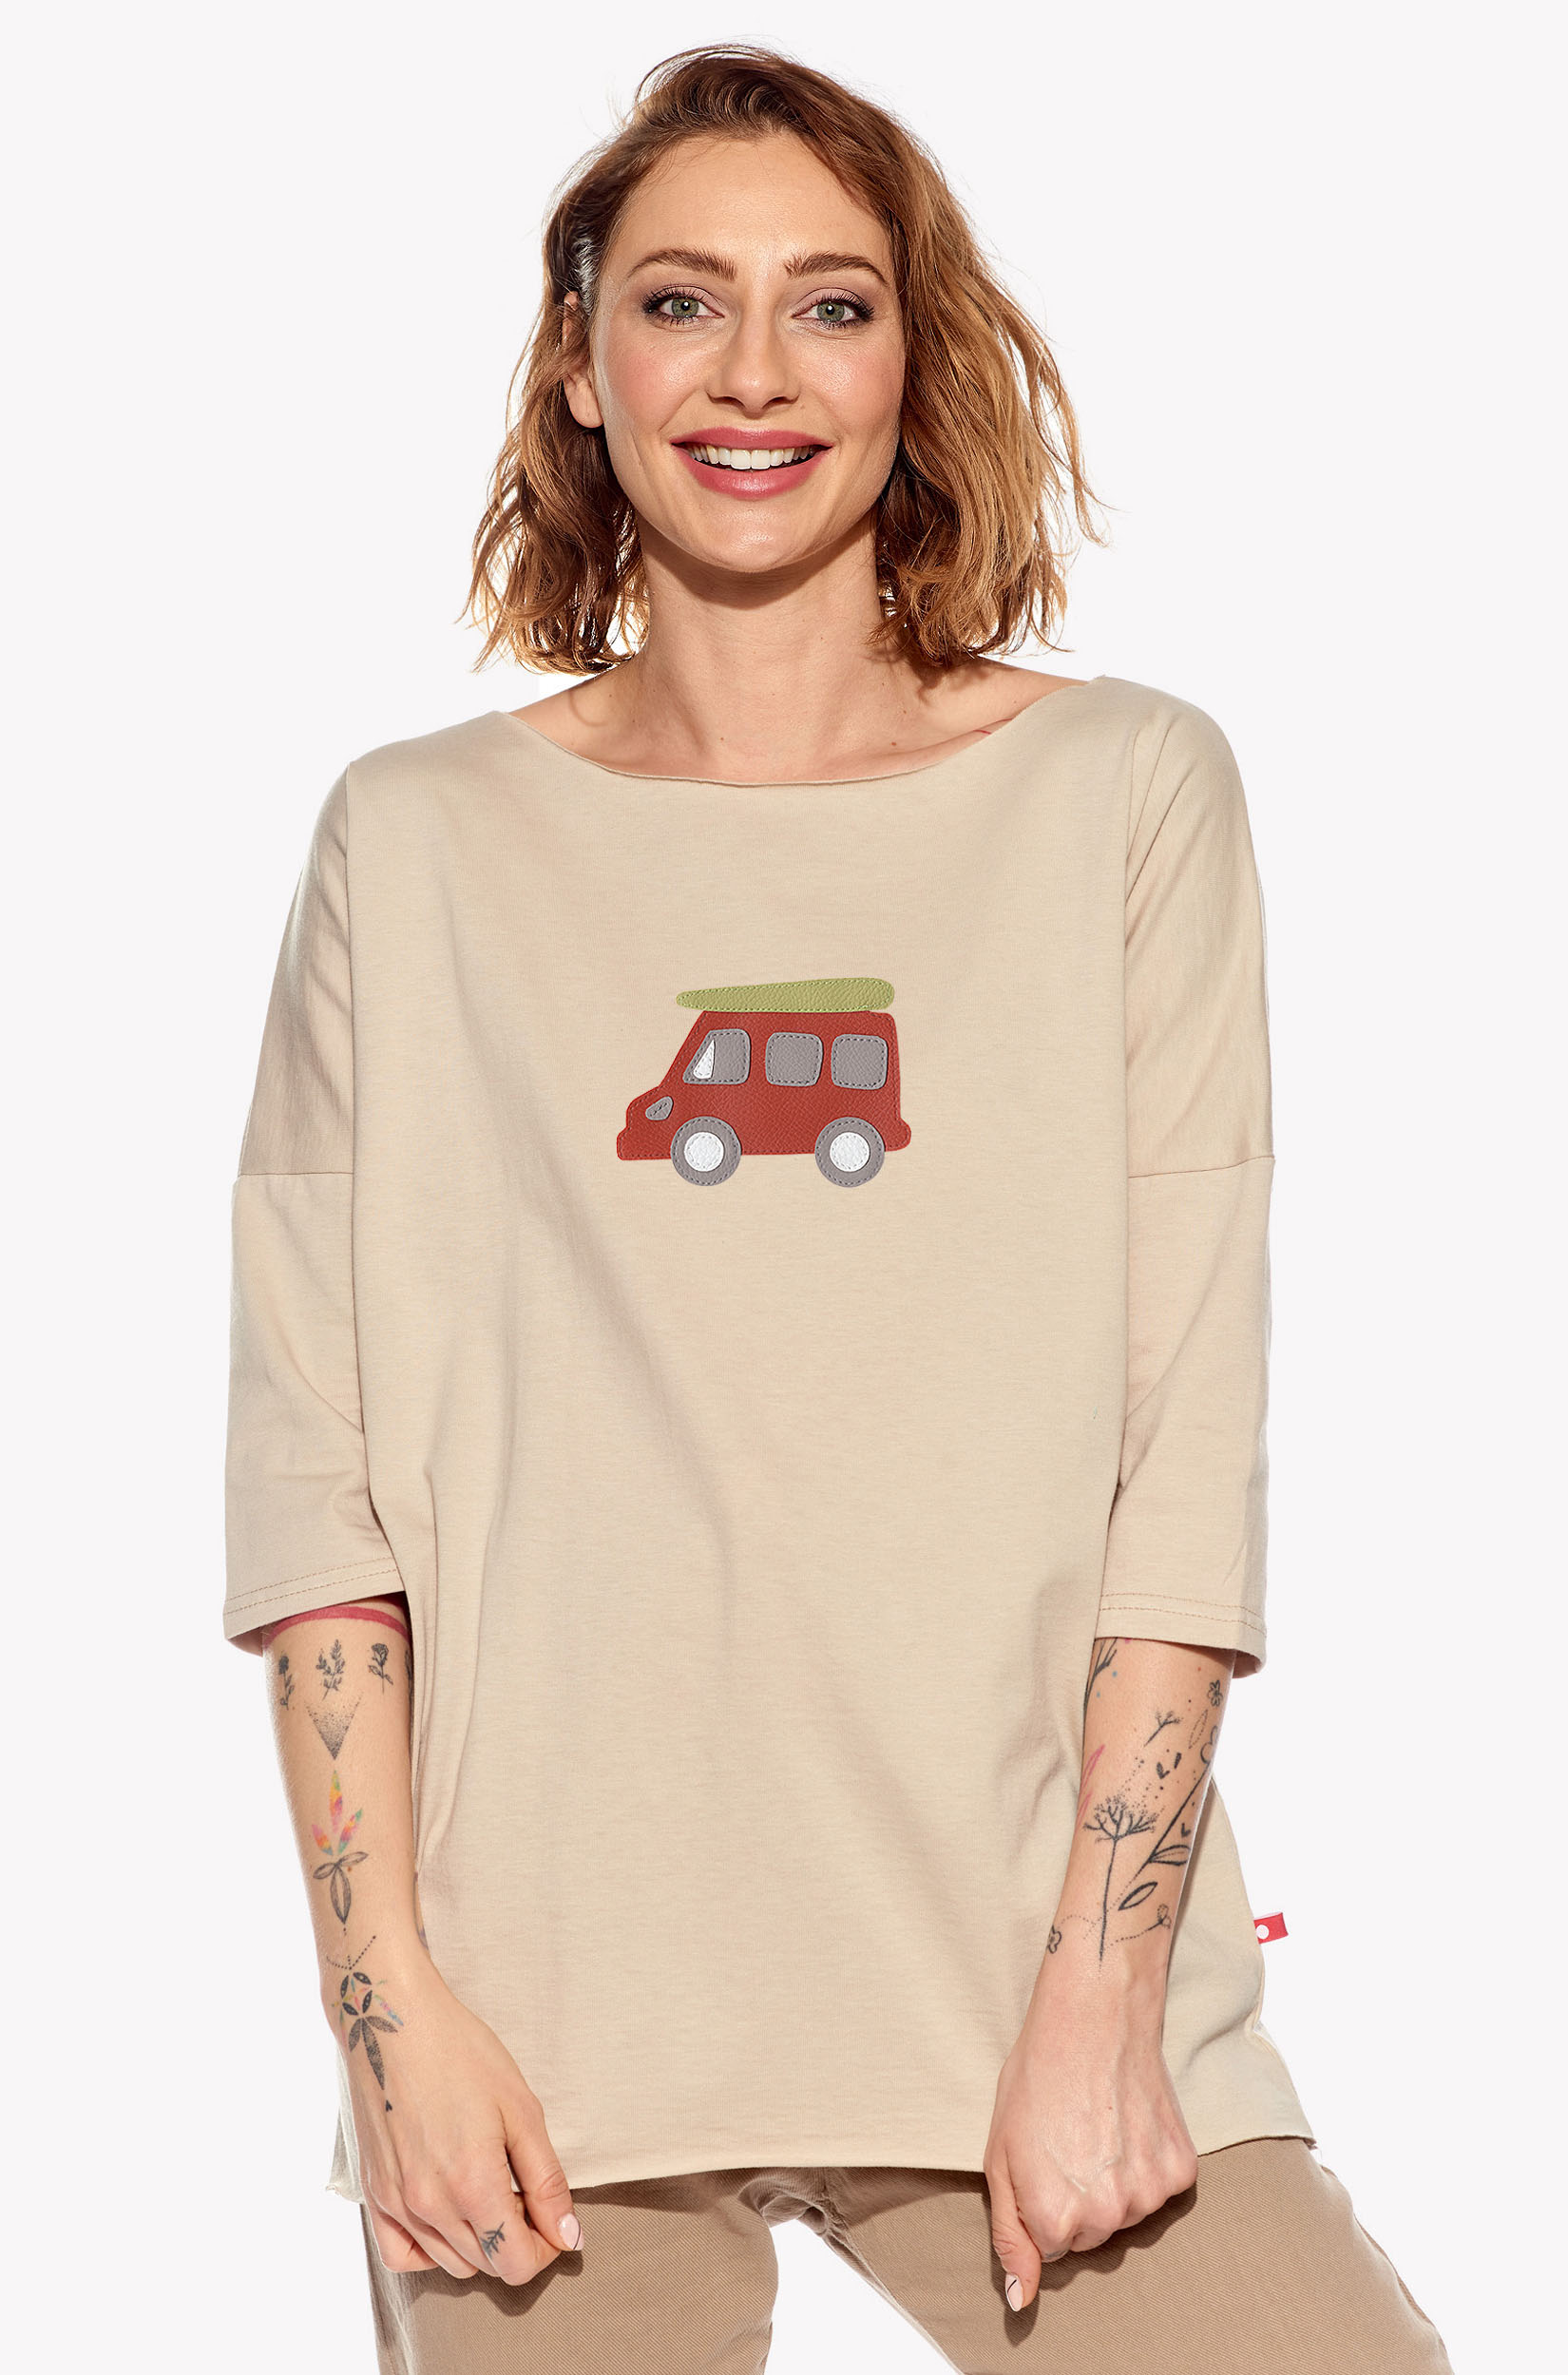 Shirt with caravan